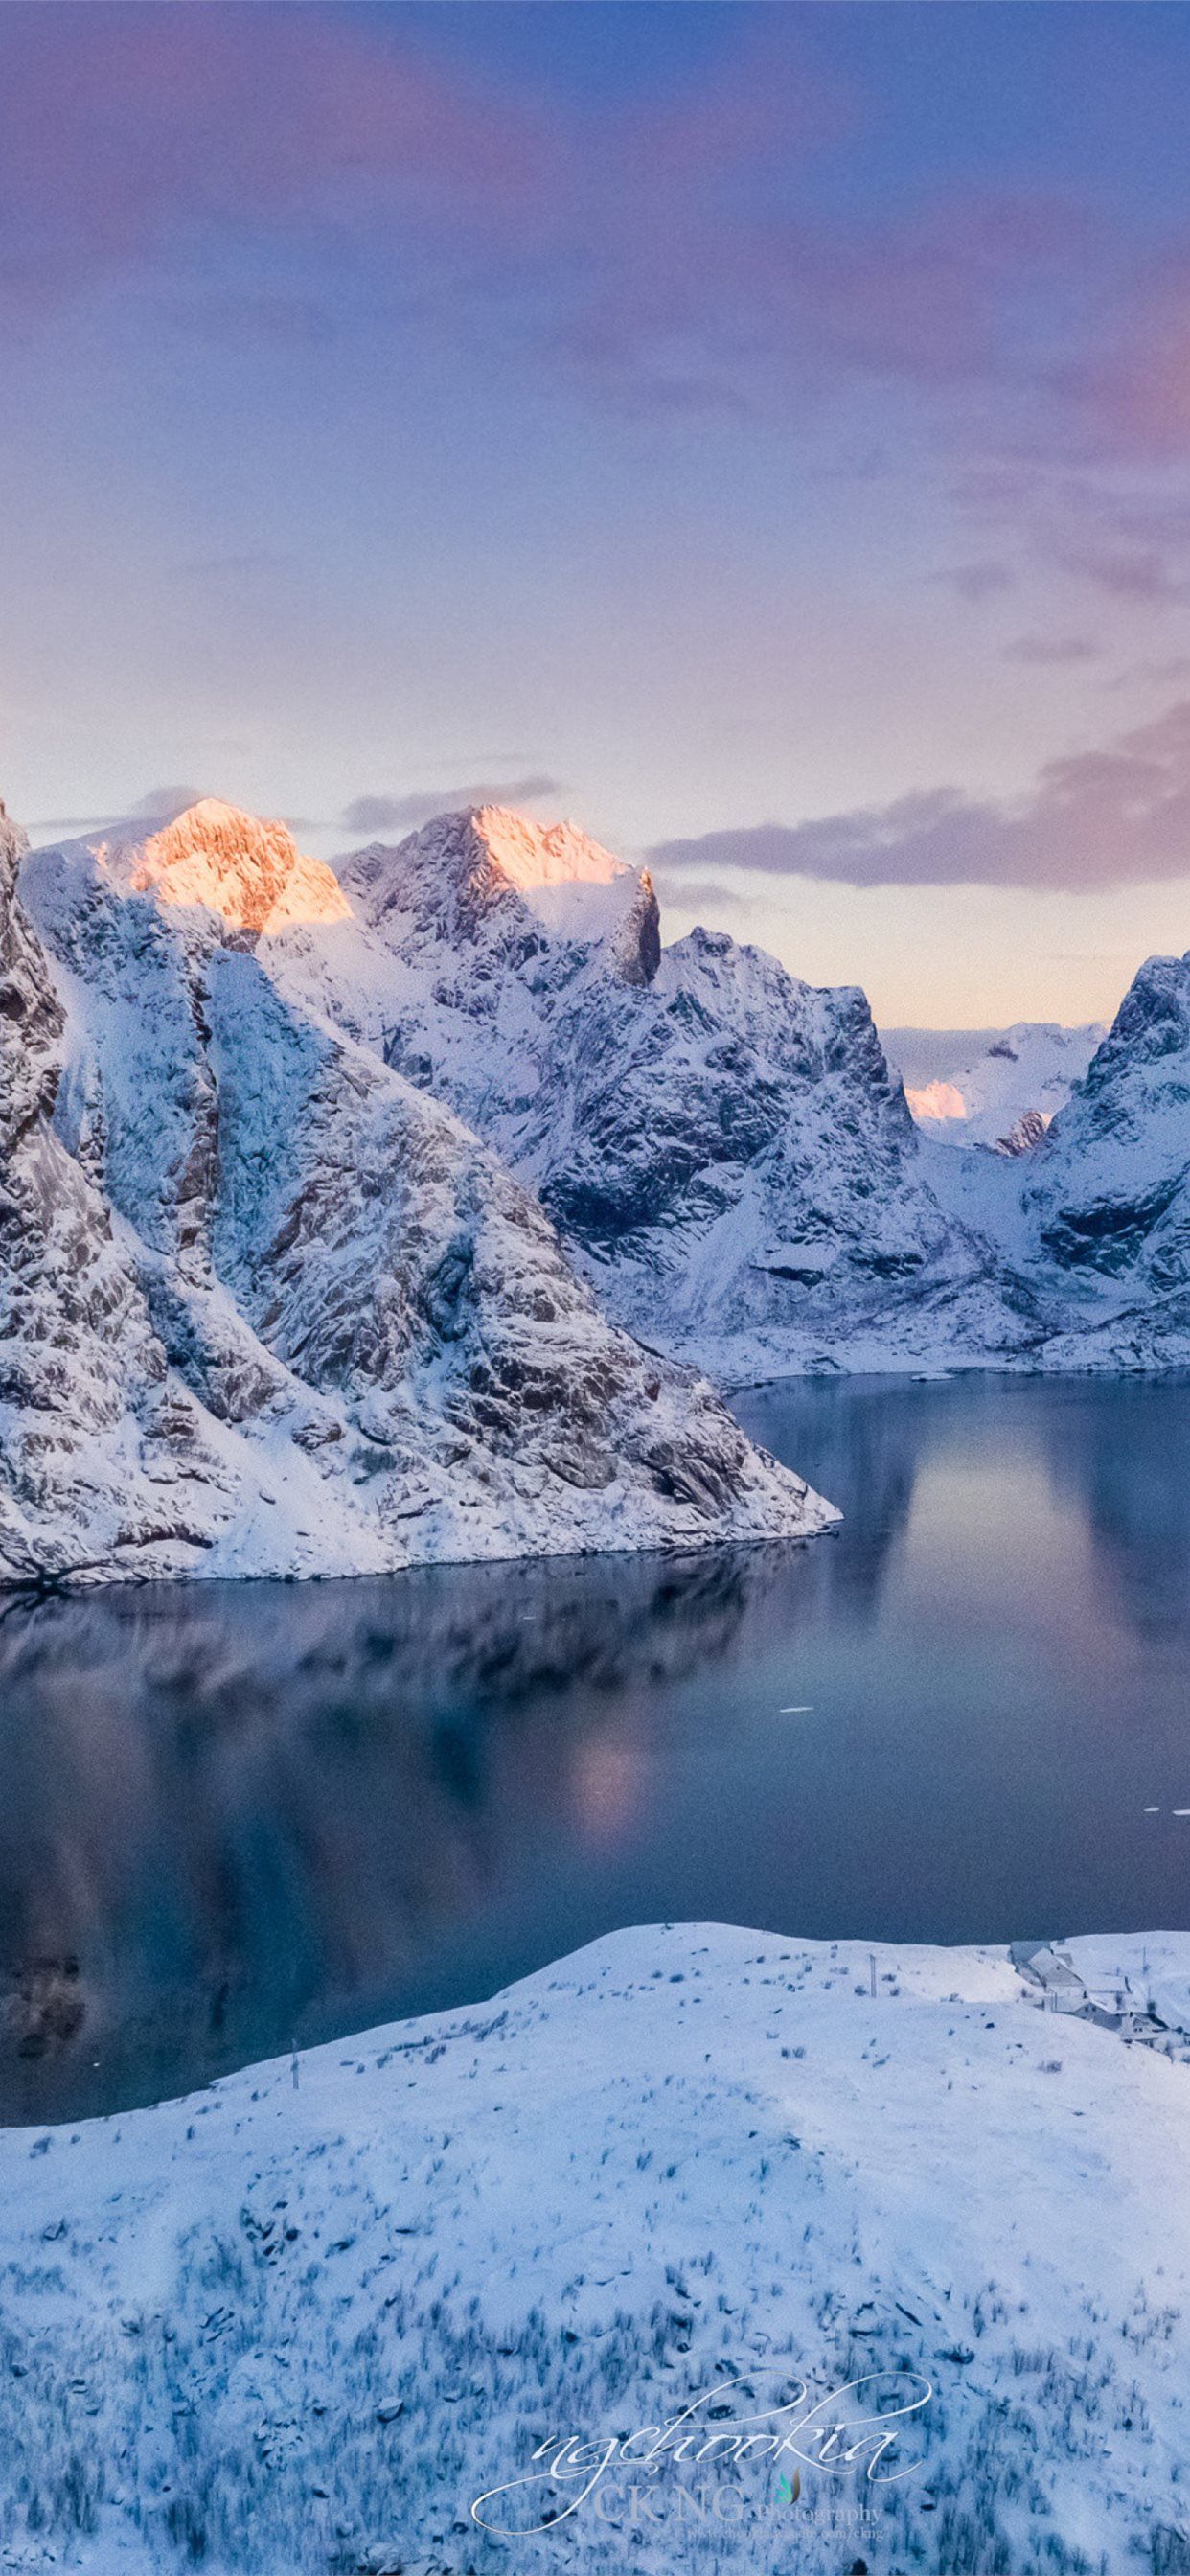 Norway Lofoten Mountains Winter Bay Snow Samsung G. iPhone 11 Wallpaper Free Download